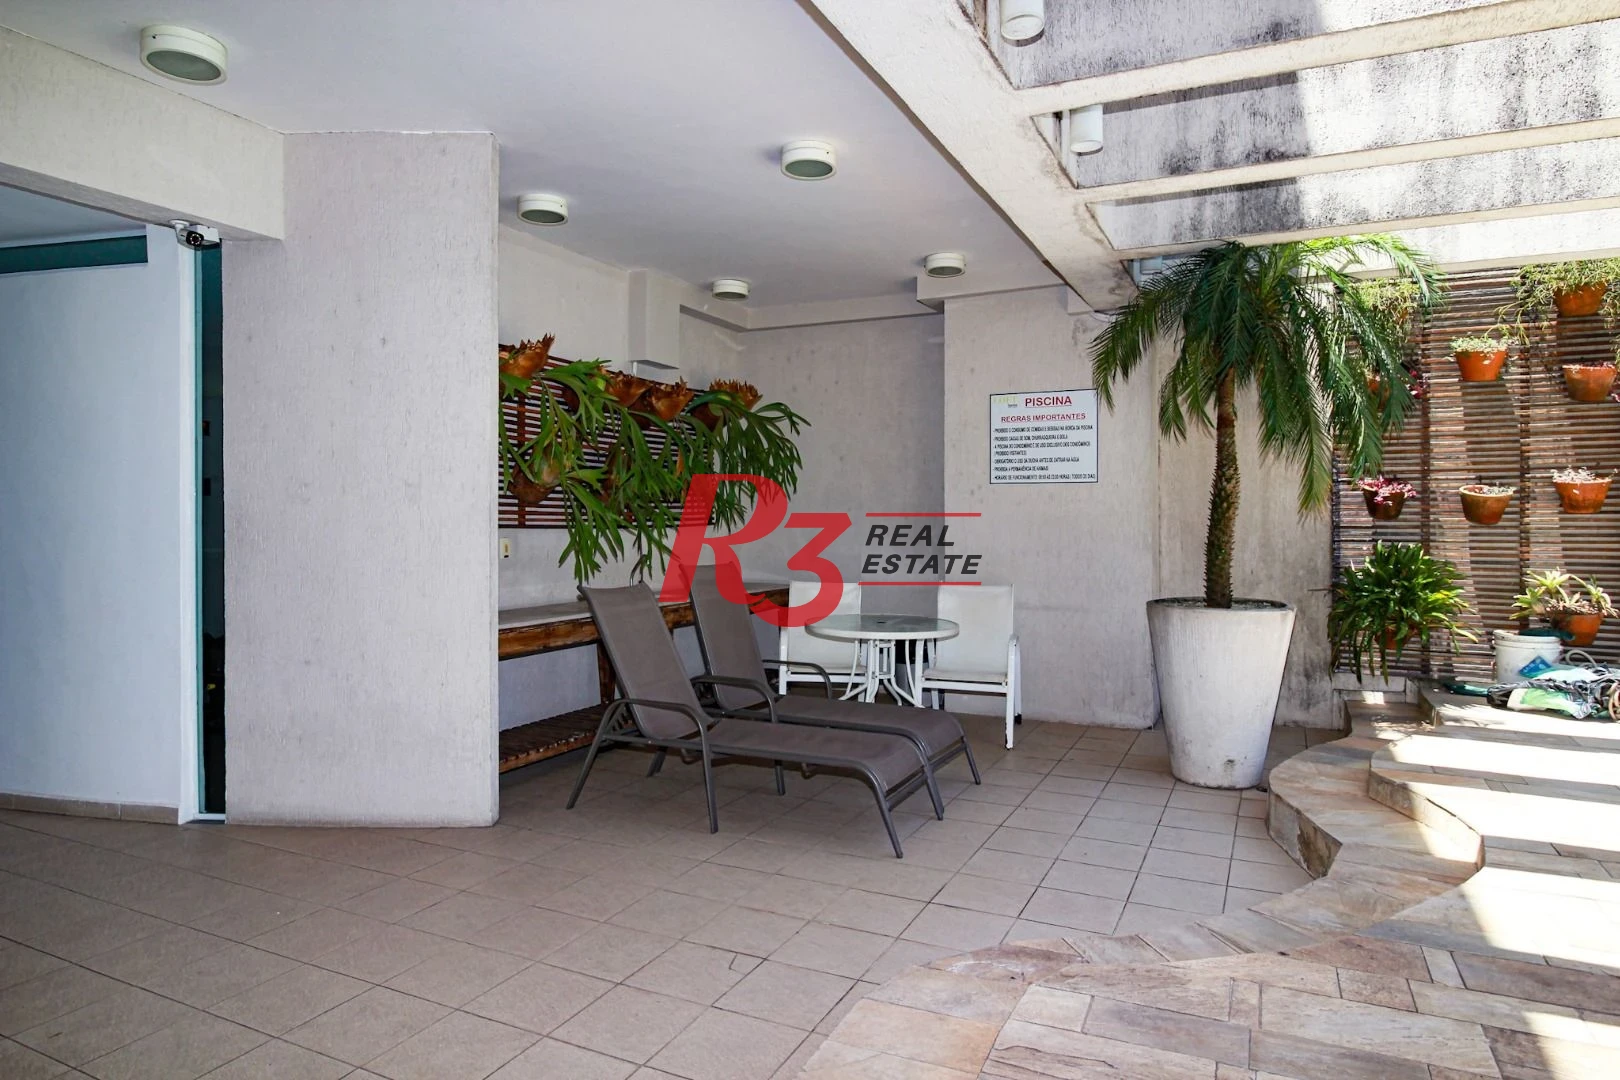 Apartamento Duplex com 2 dormitórios, 75 m² - venda ou aluguel - Gonzaga - Santos/SP